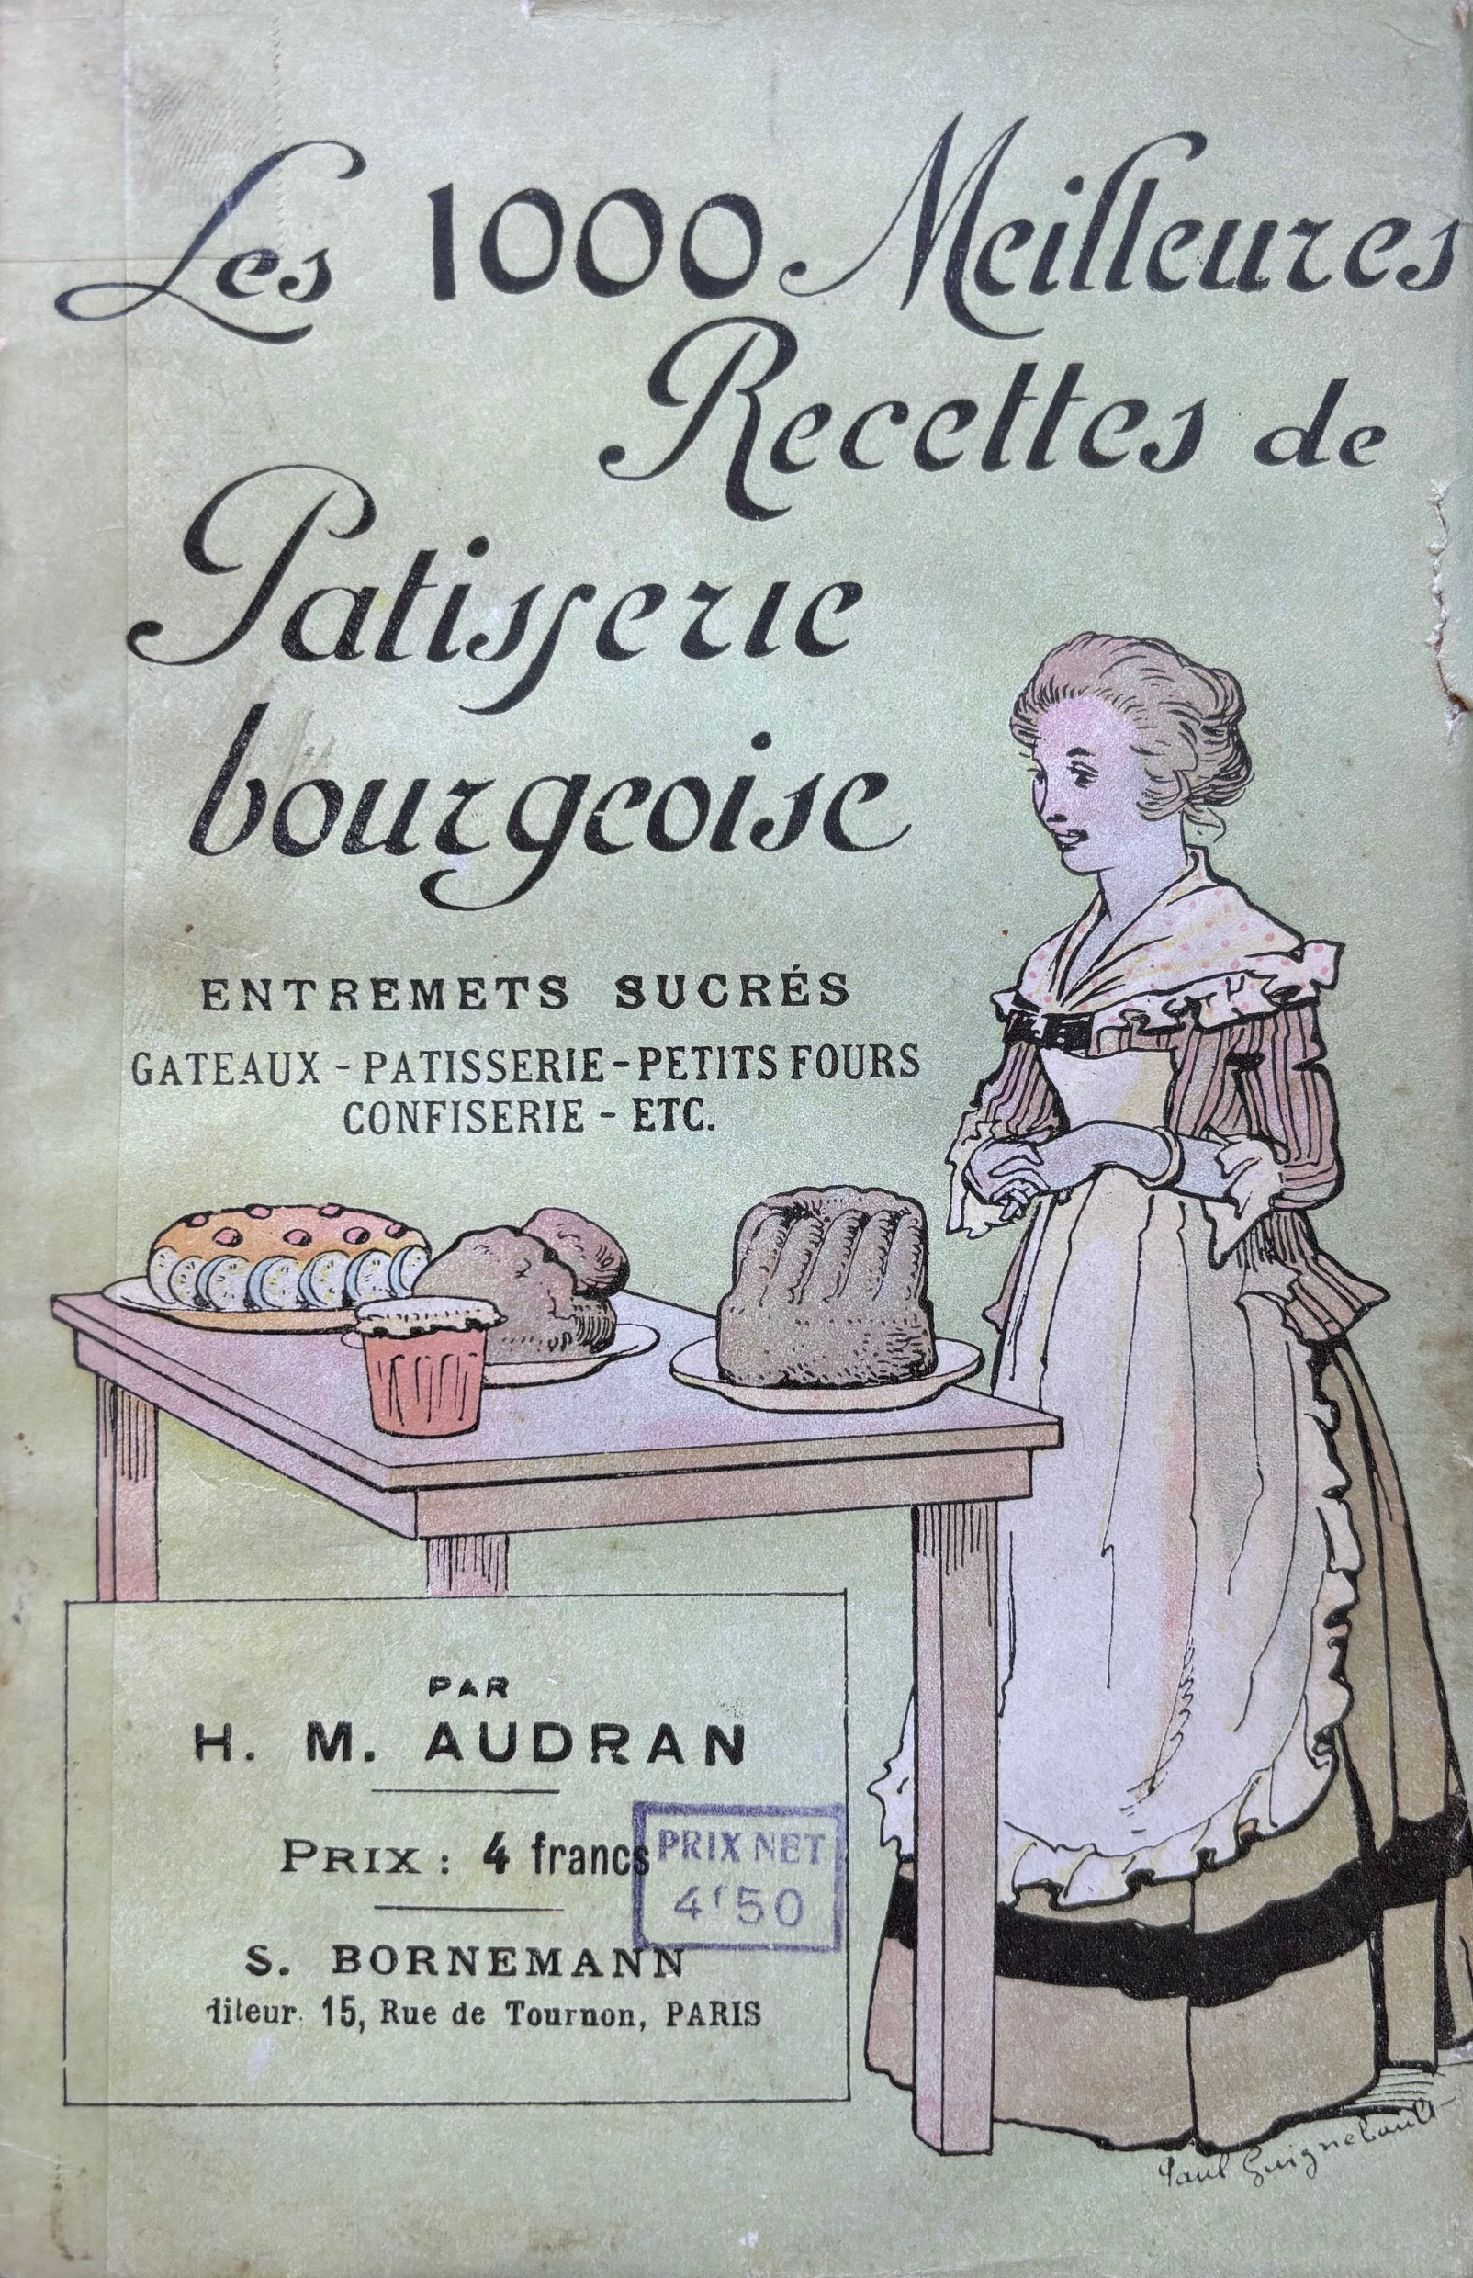 (*NEW ARRIVAL*) (Pastry) H.M. Audran. Les 1000 Meilleures Recettes de Patisserie Bourgeoise